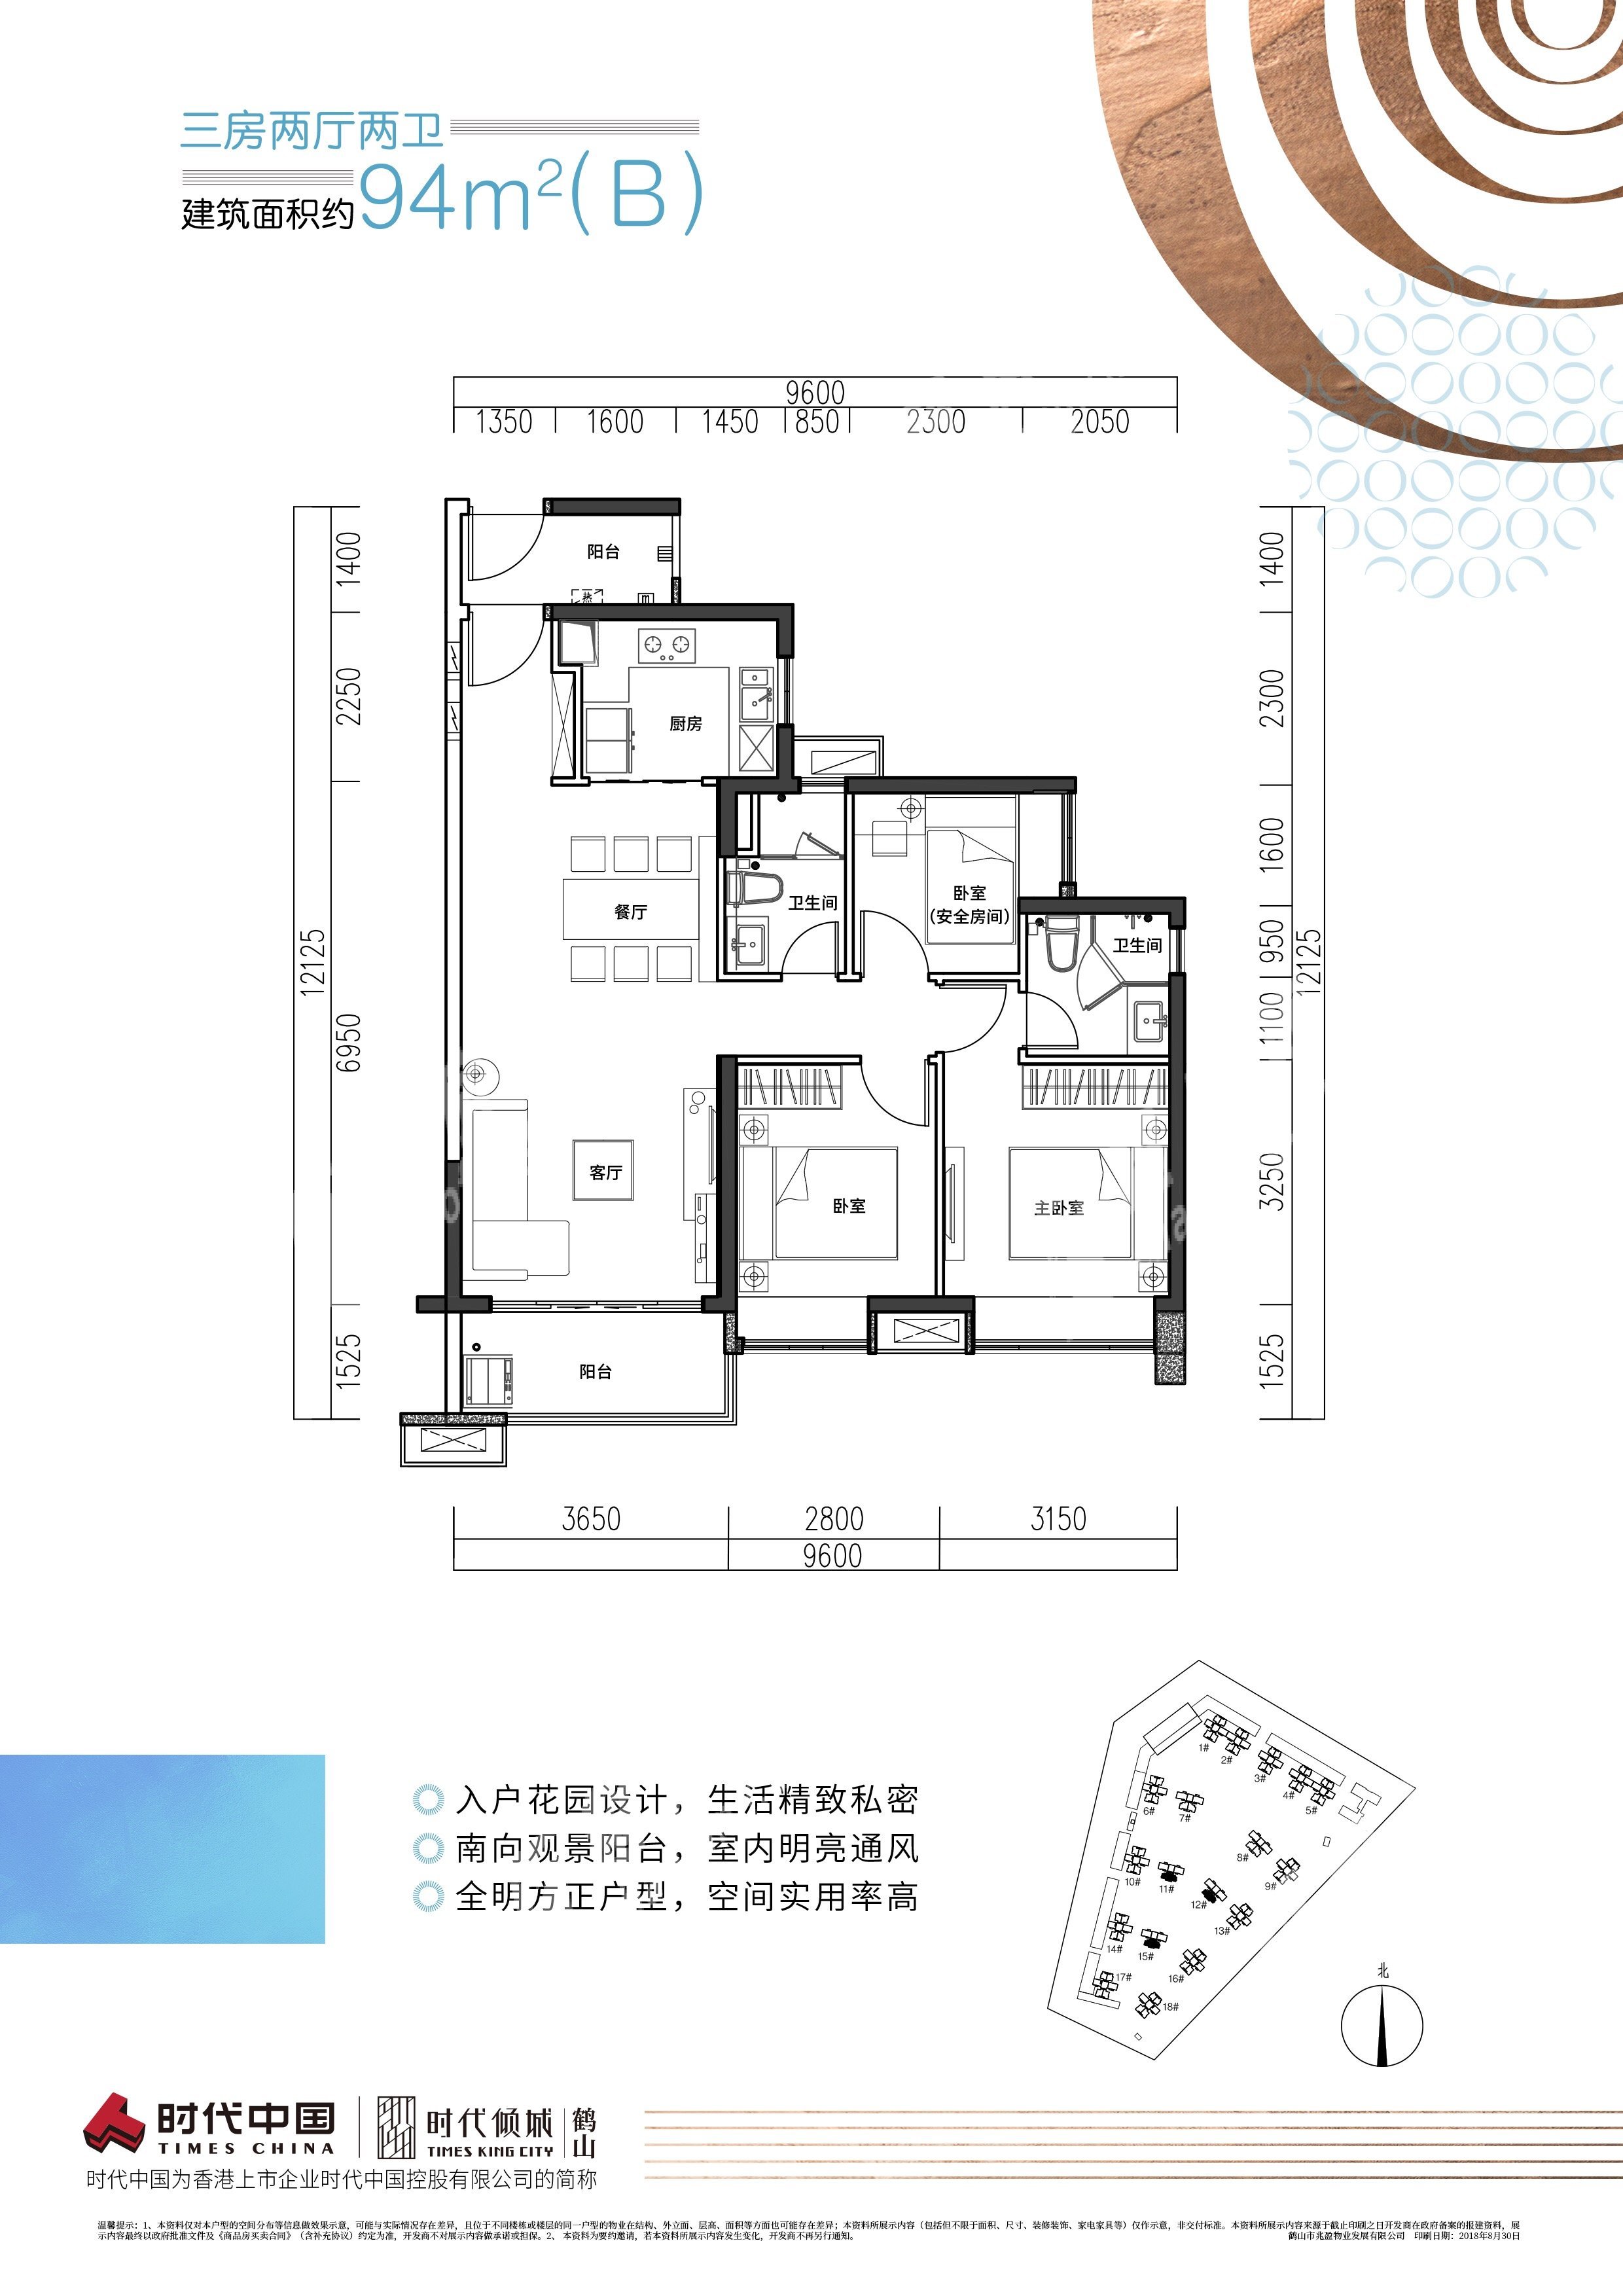 鶴山時代傾城（新房）新房94房（B）戶型 3室2廳2衛戶型圖